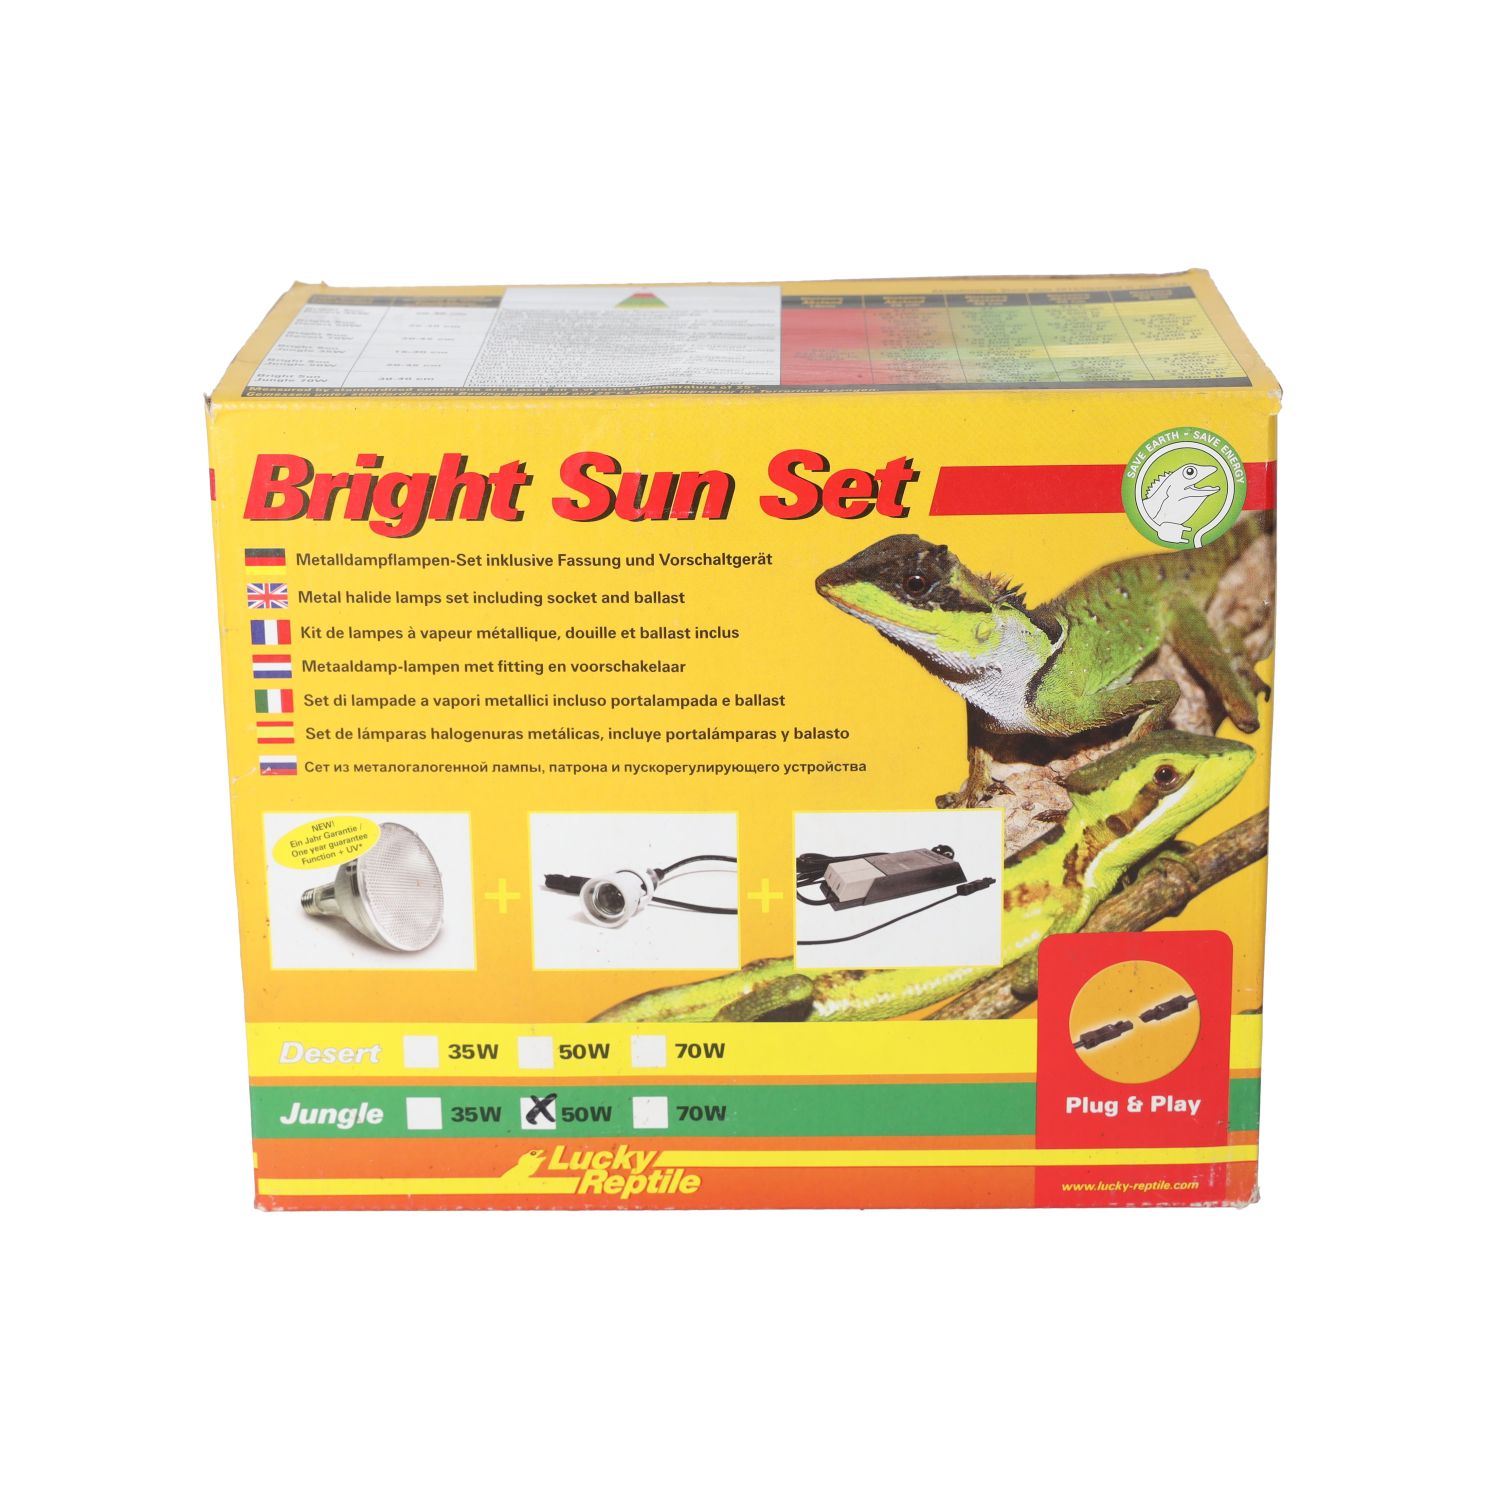 LR Bright Sun Evo SET Jungle 50W, BSS-J50